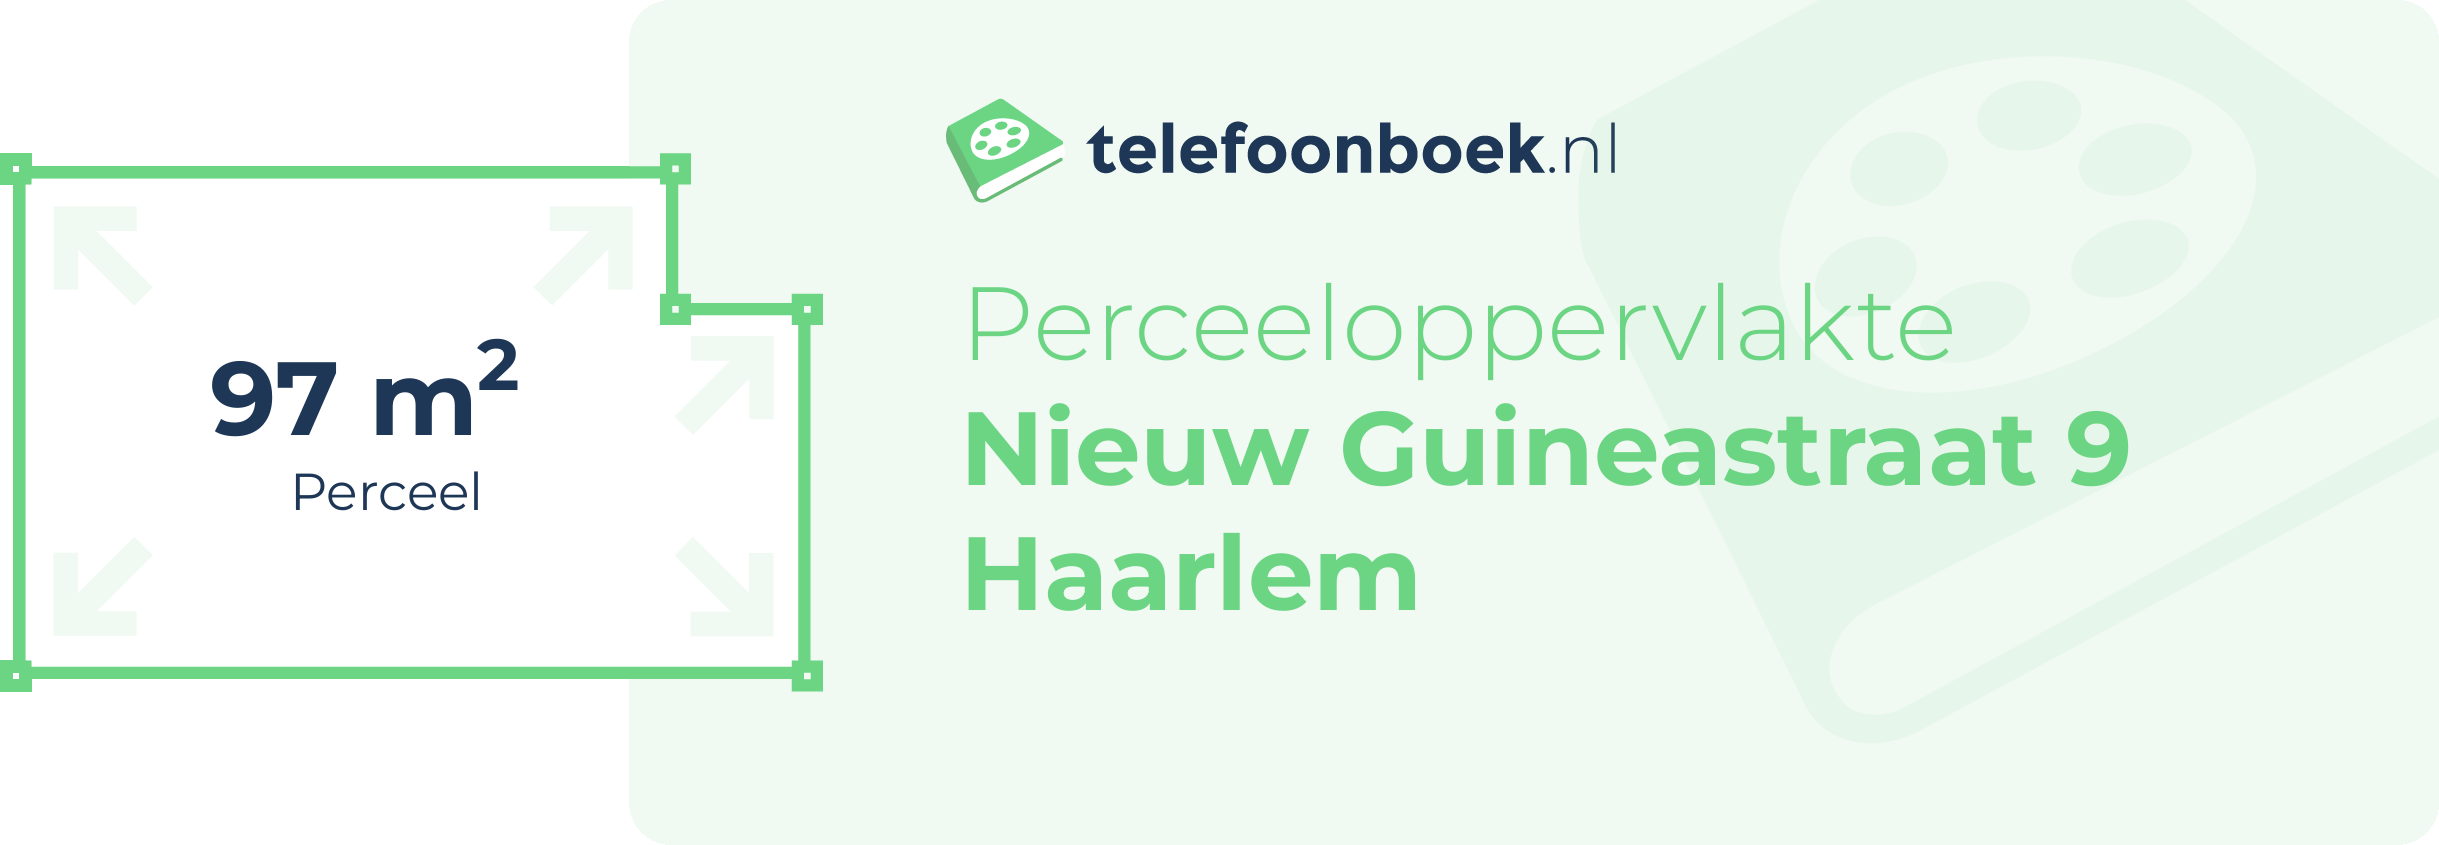 Perceeloppervlakte Nieuw Guineastraat 9 Haarlem